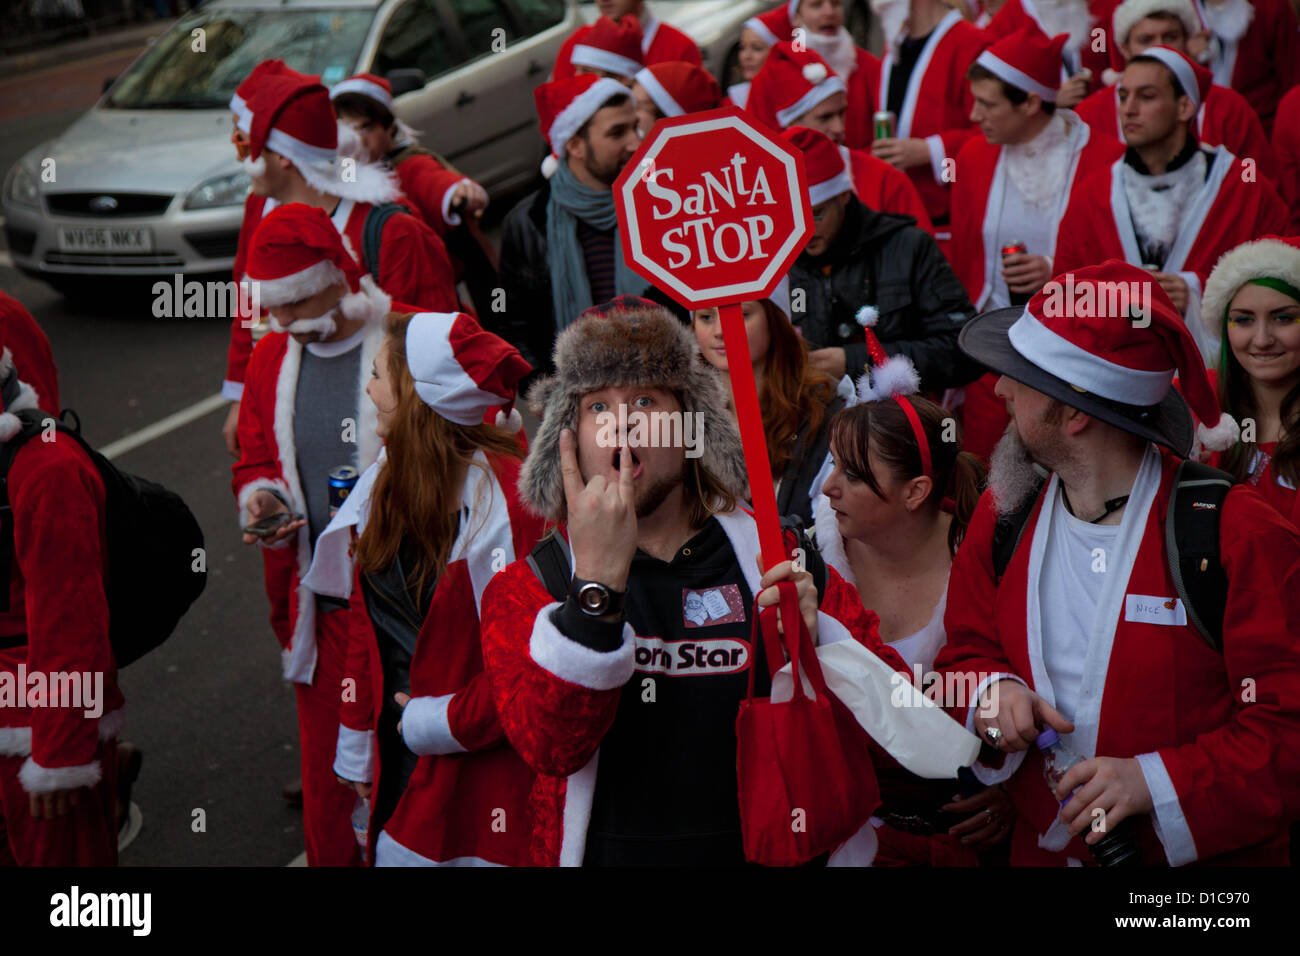 Londres, Royaume-Uni. 15 décembre 2012 Des gens habillés comme Santas prenant part à la Santa Con cas pose devant l'appareil photo. Credit : Nelson Pereira / Alamy Live News Banque D'Images